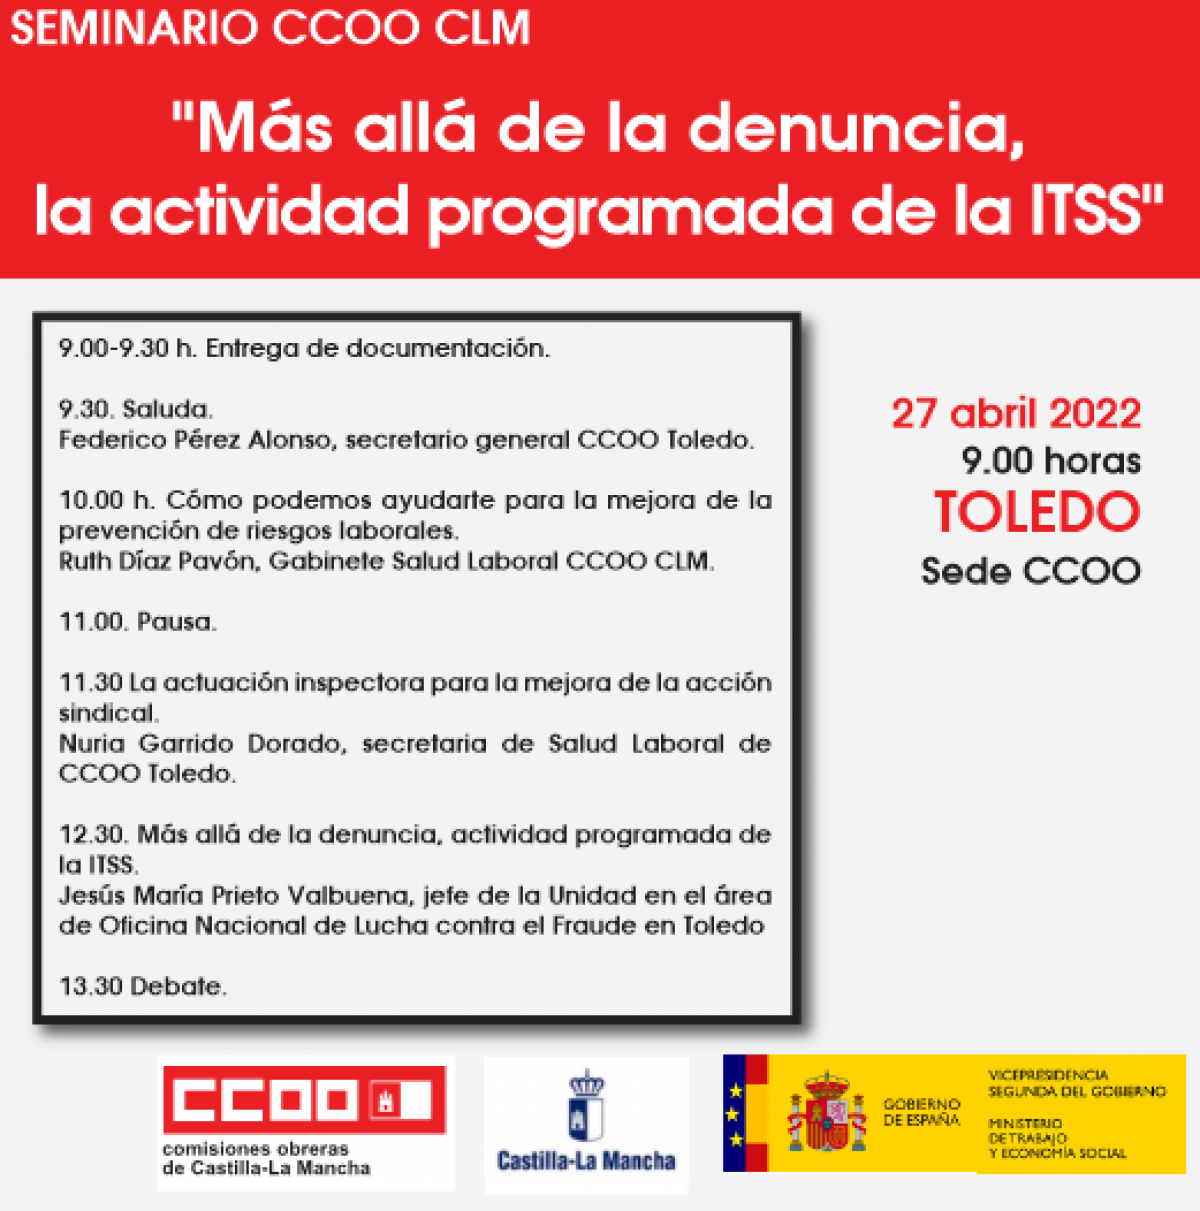 Seminarios "Más allá de la denuncia, actividad programa de la ITSS"